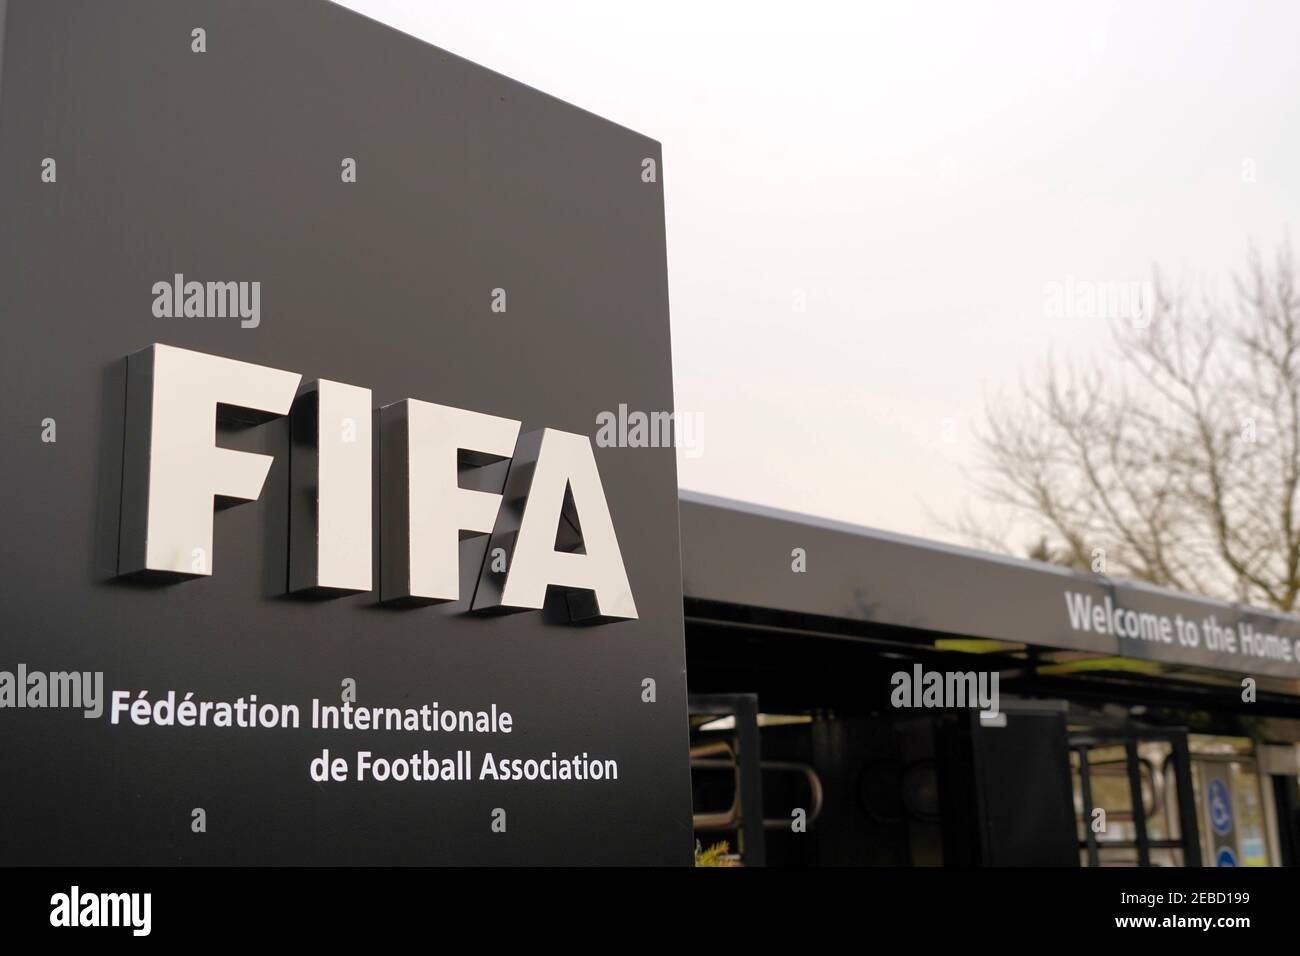 La FIFA signe à l'entrée pour les visiteurs, les accueillant au siège de Zurich. Il y a un nom complet de l'association en français. Banque D'Images